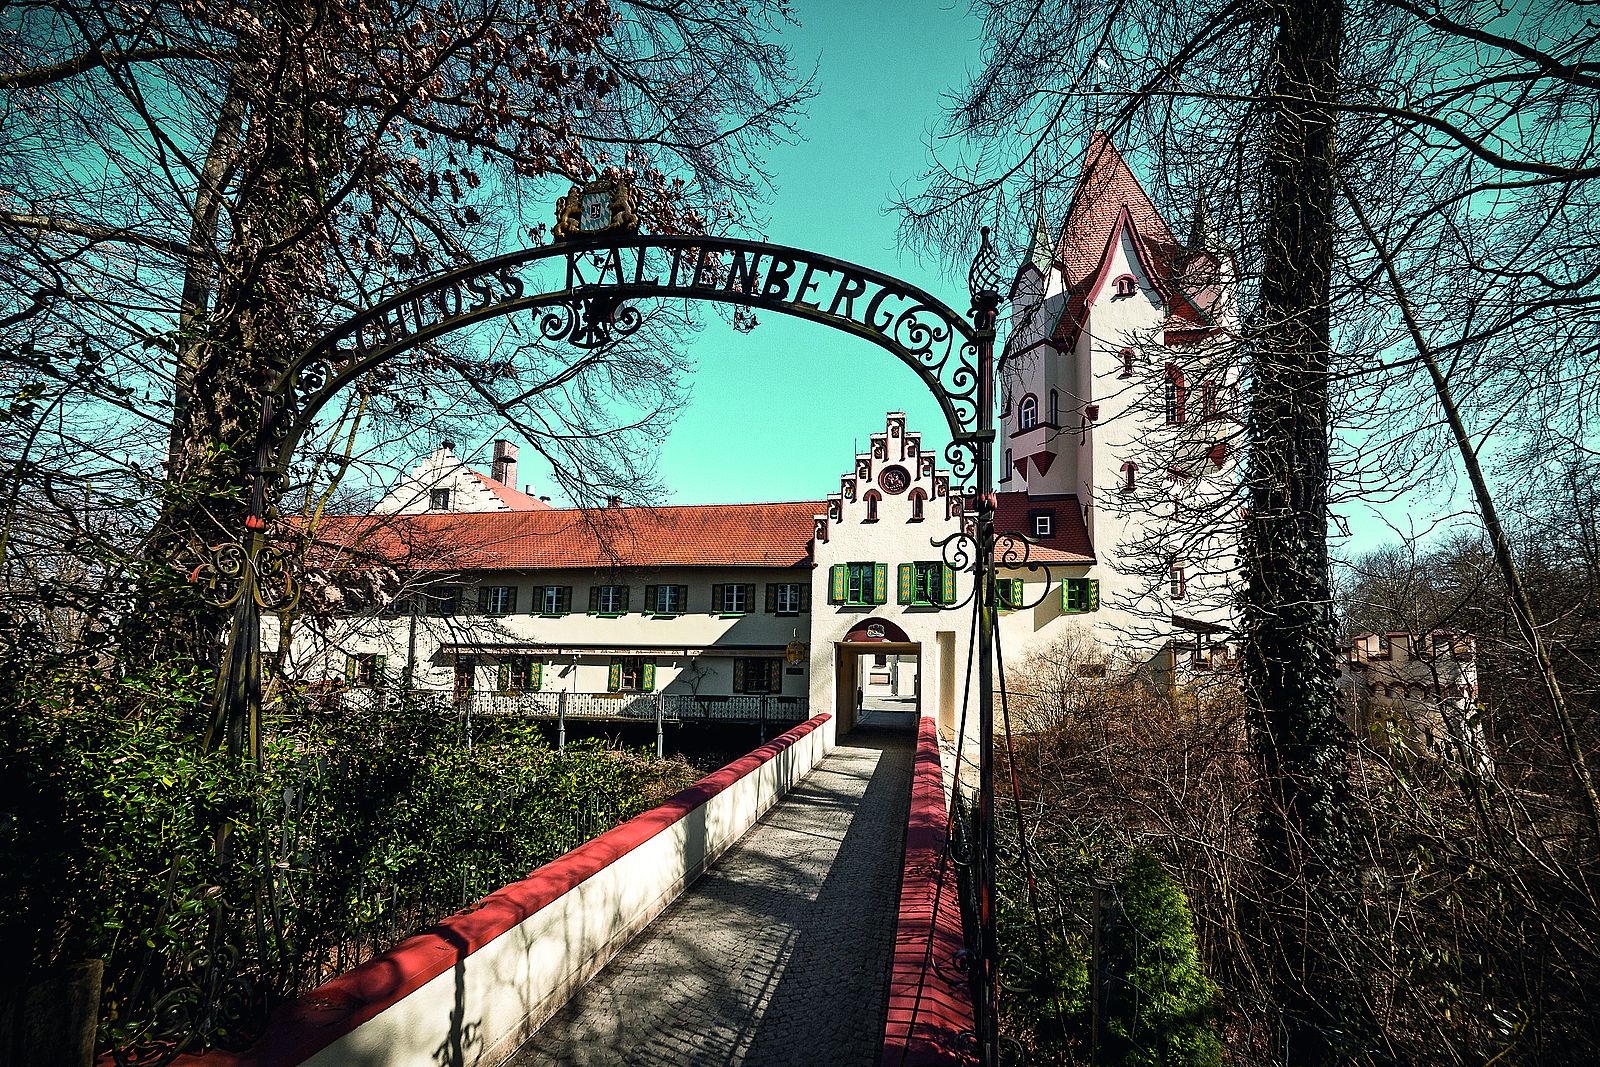 Bier König Brauhaus Schloss Kaltenberg